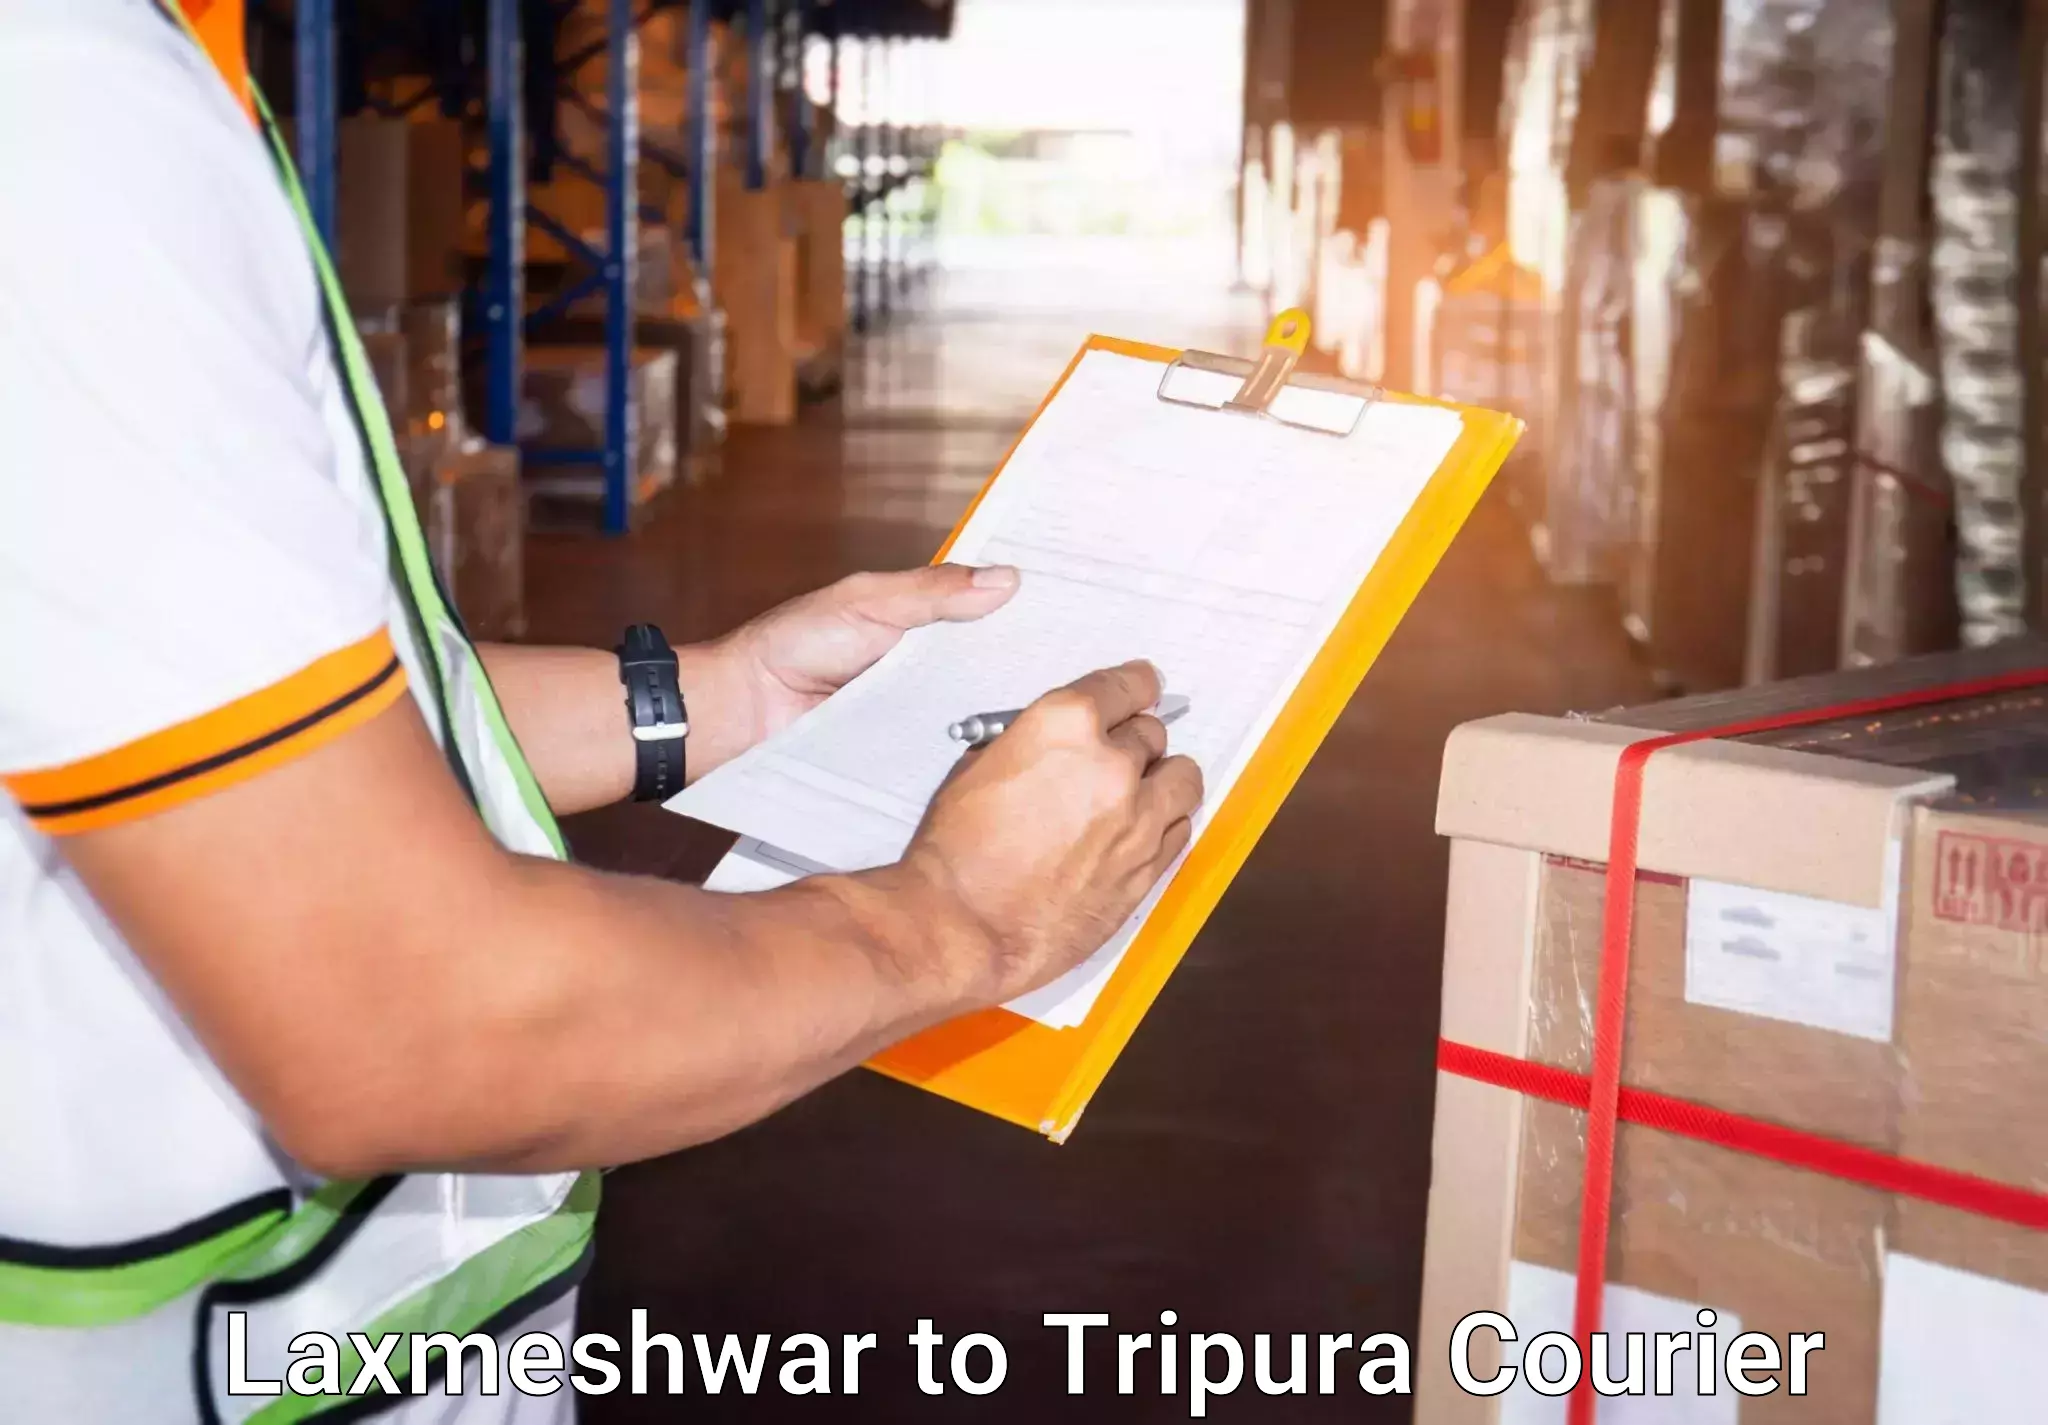 Baggage transport technology Laxmeshwar to Tripura